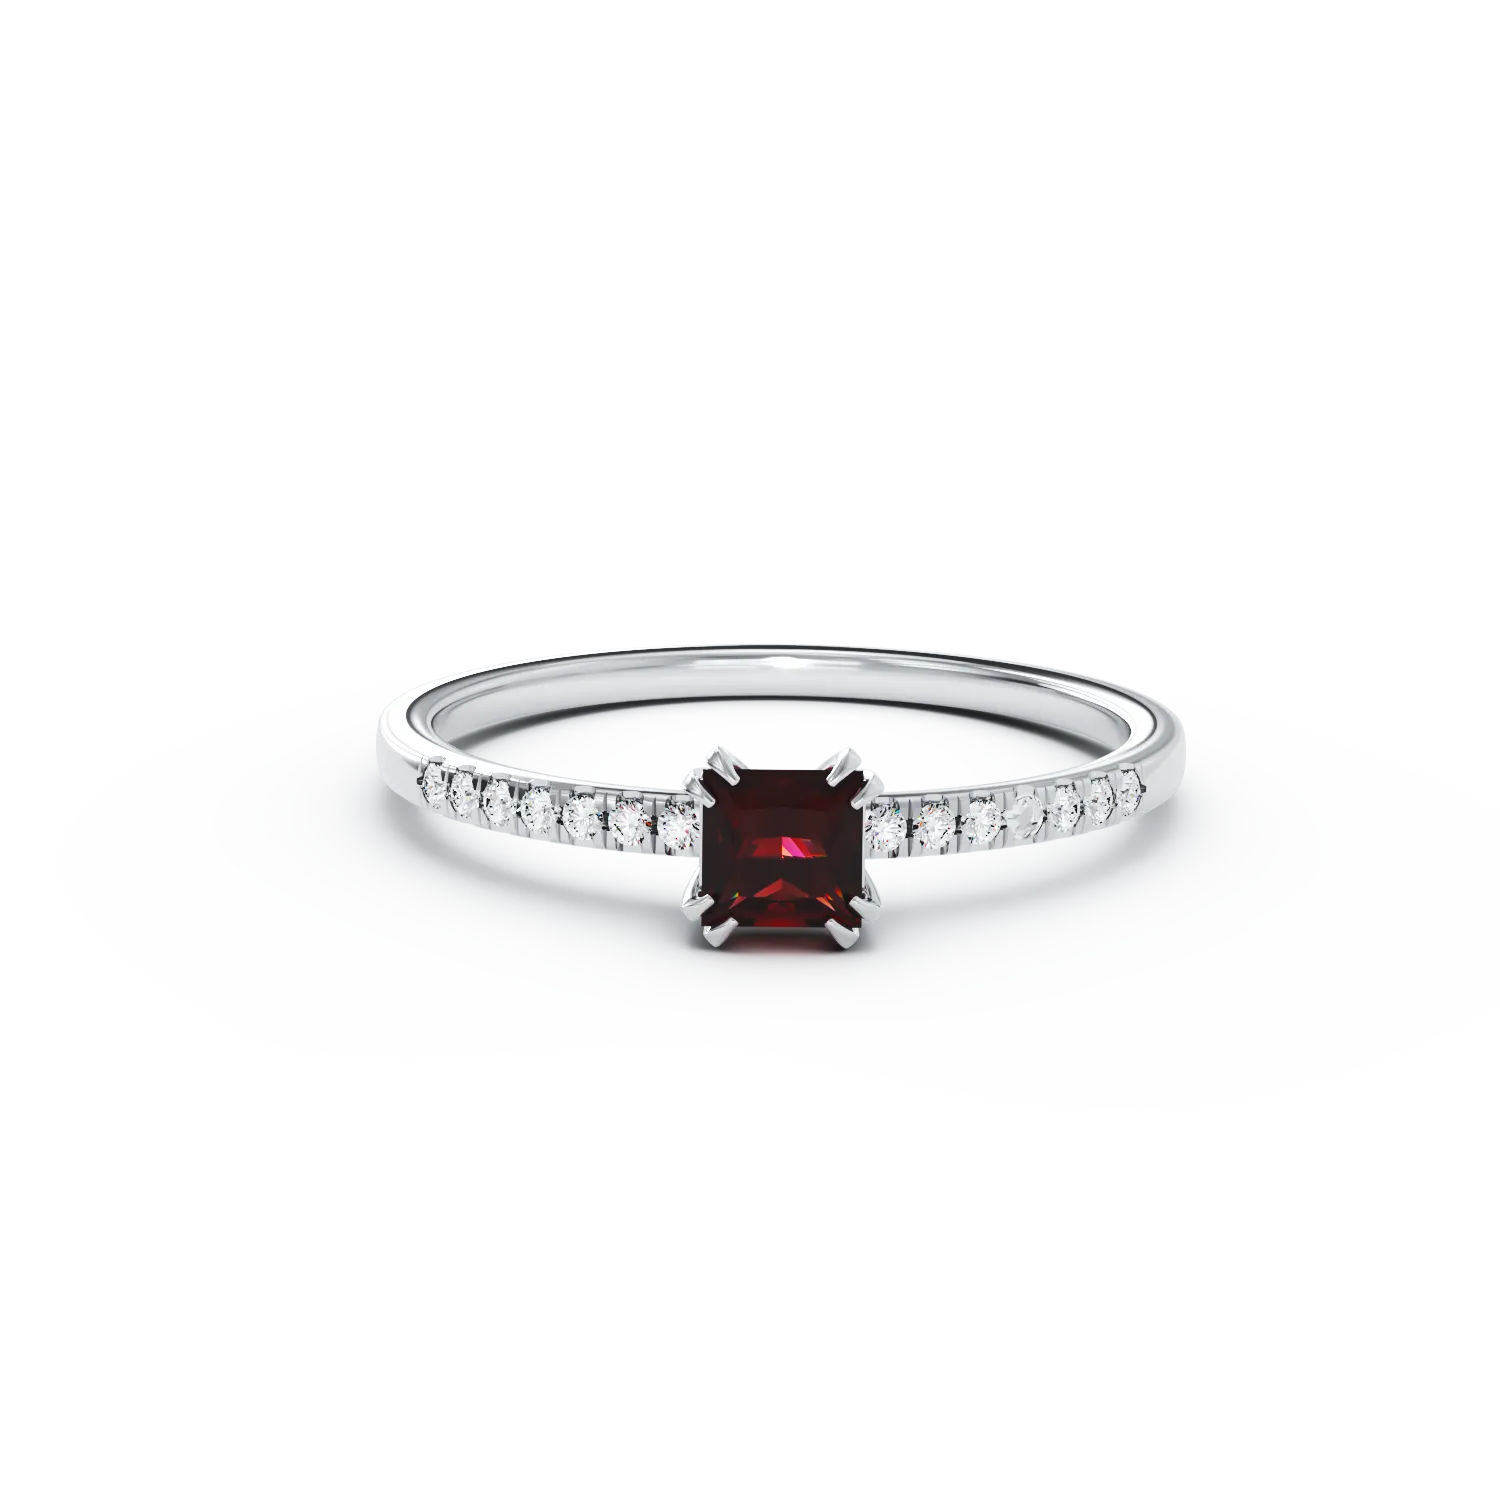 18 karátos fehérarany eljegyzési gyűrű 0.39 karátos többszínű turmalinnal és 0.06 karátos gyémántokkal